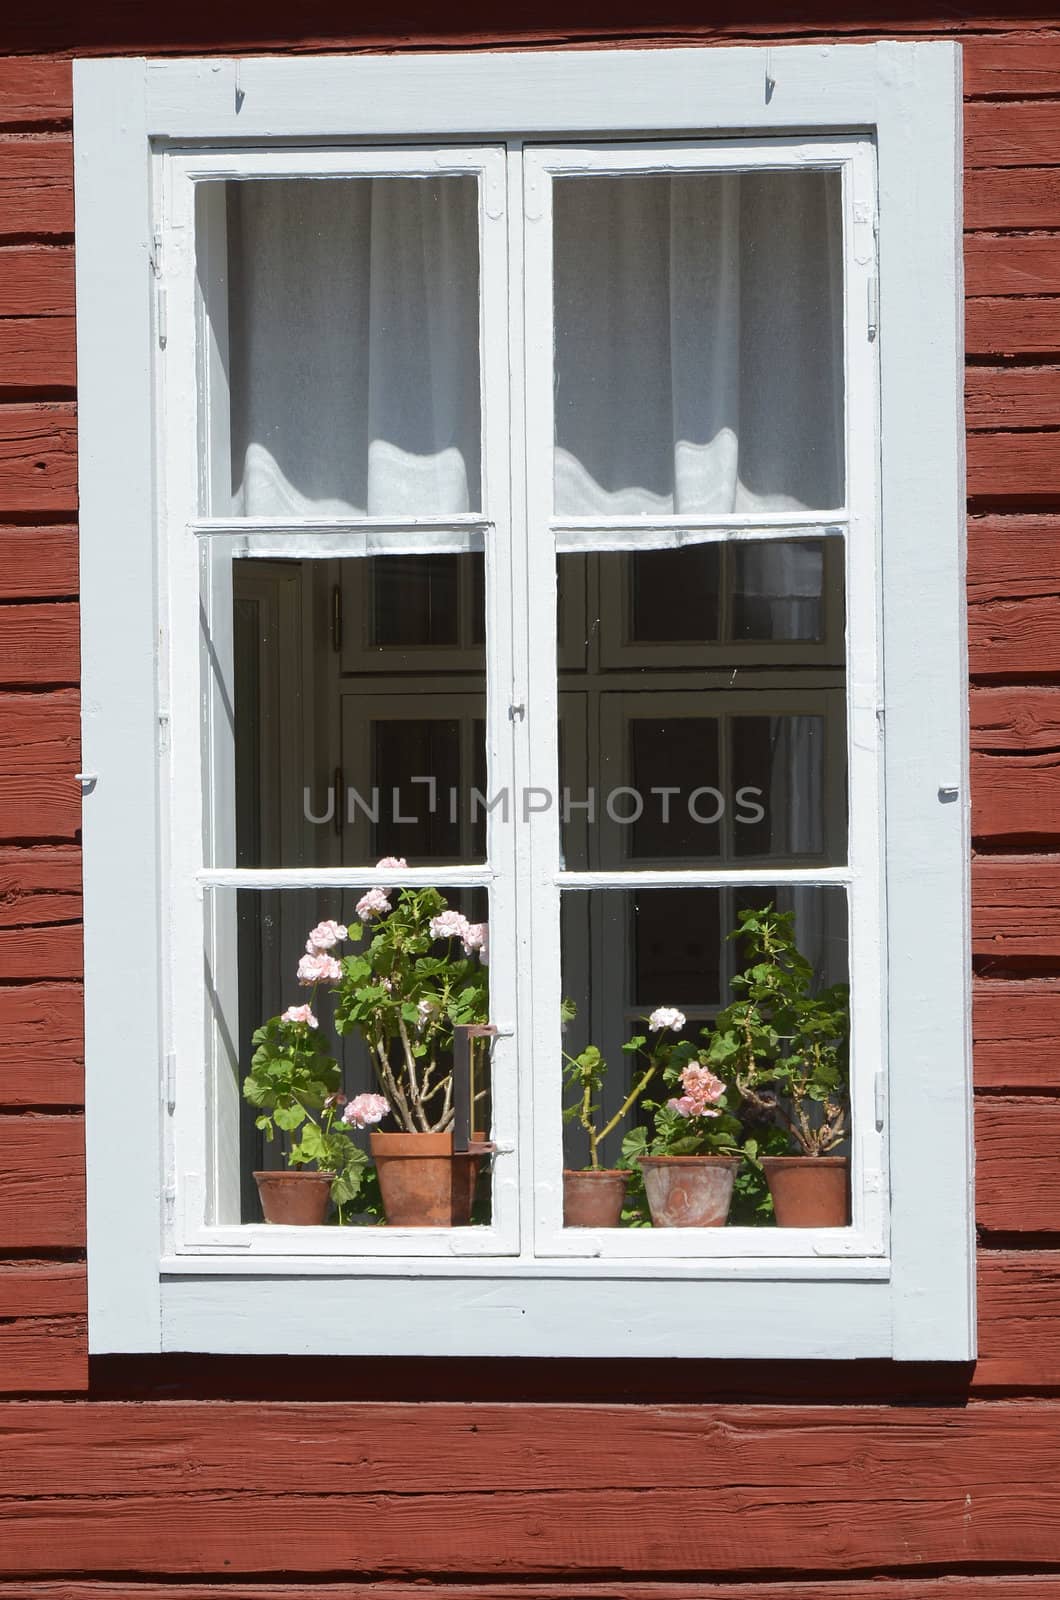 A window on an old a hälsinge farm